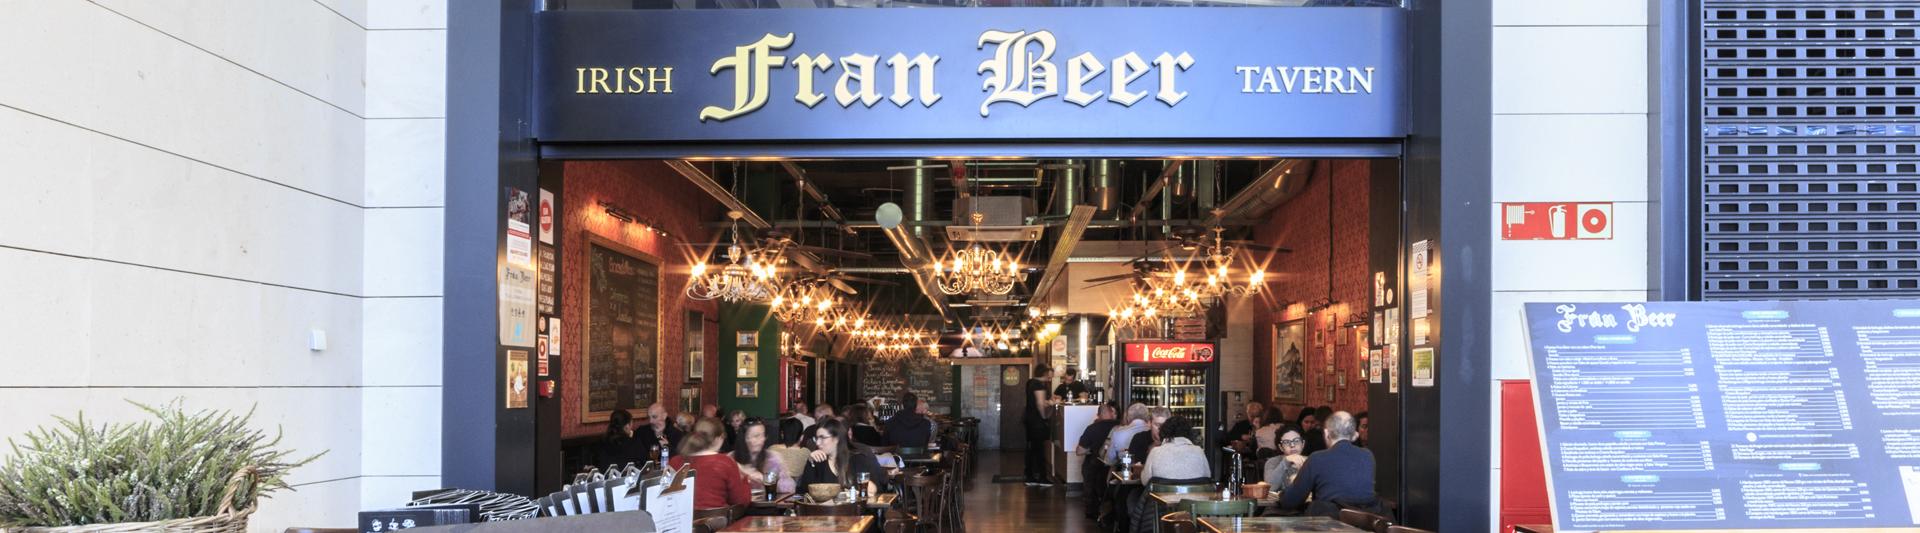 Fran Beer